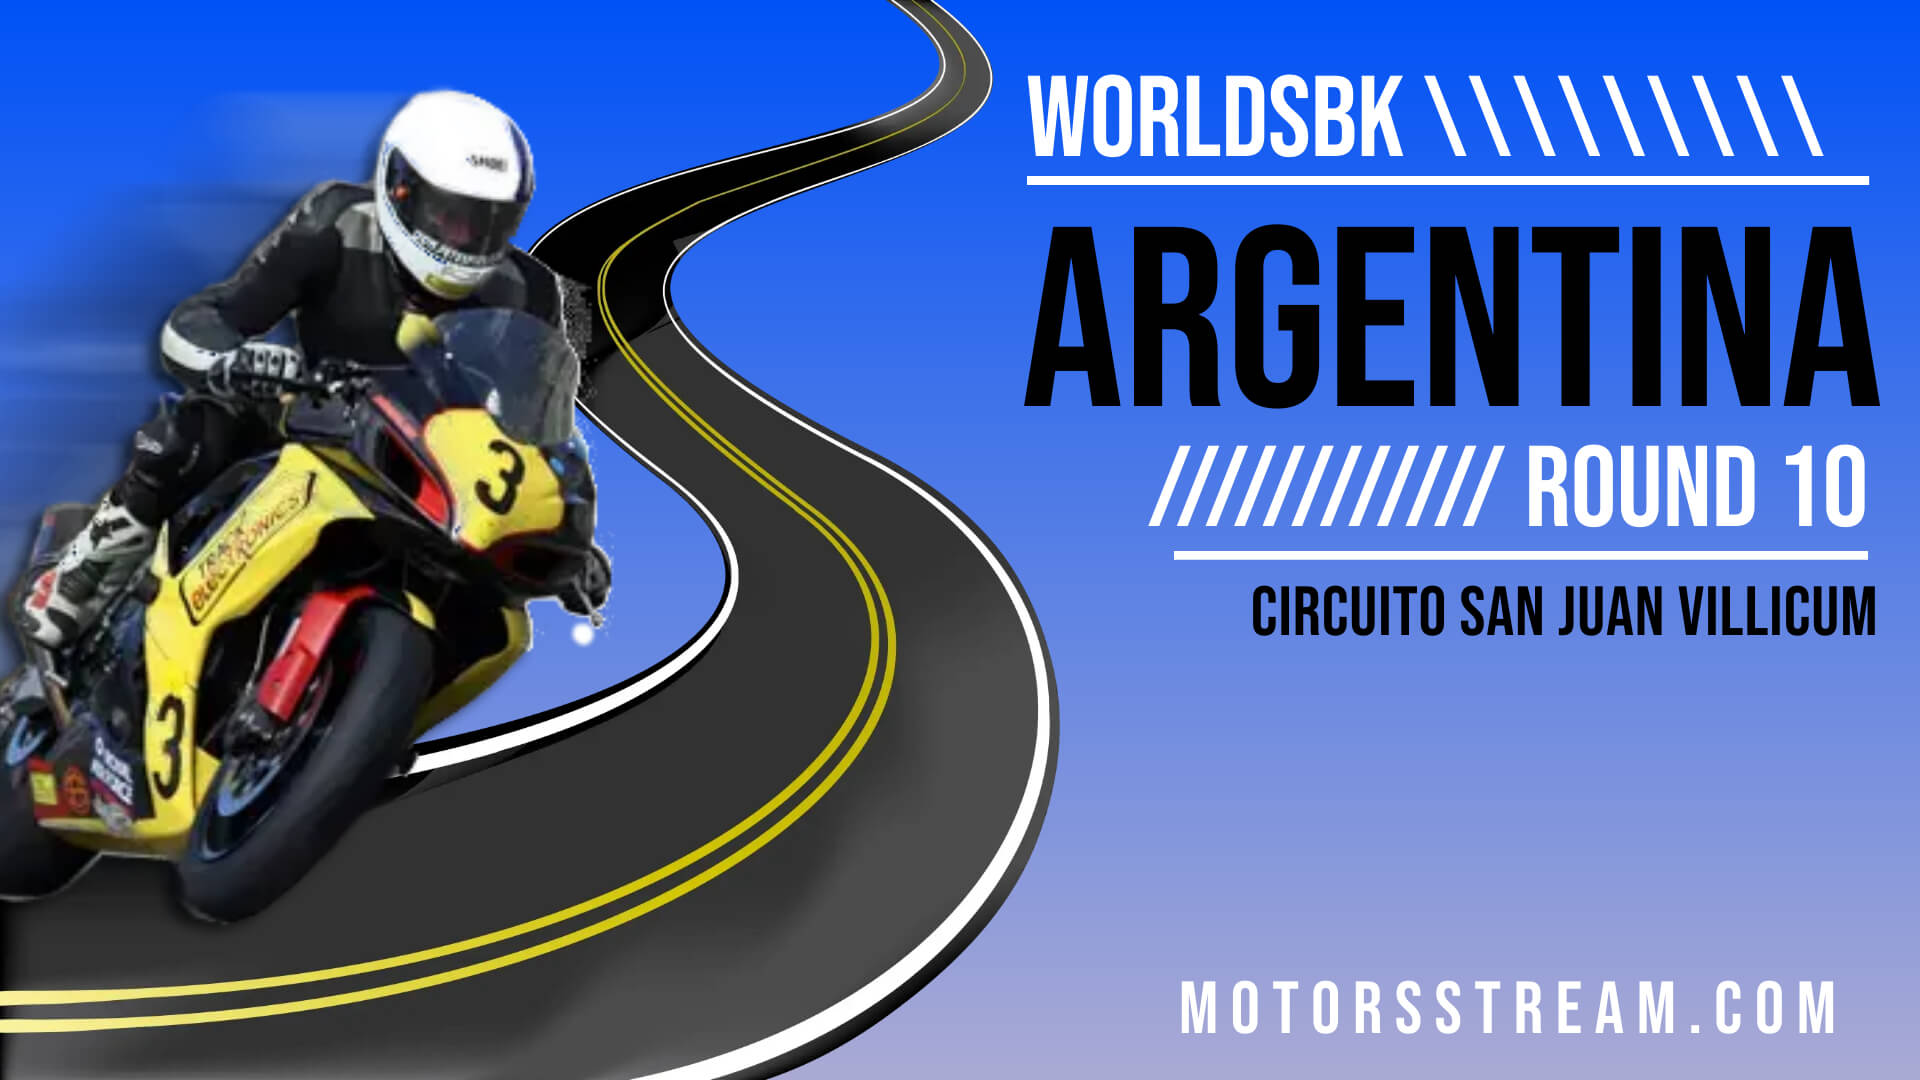 Argentina WSBK Round 12 Live Stream